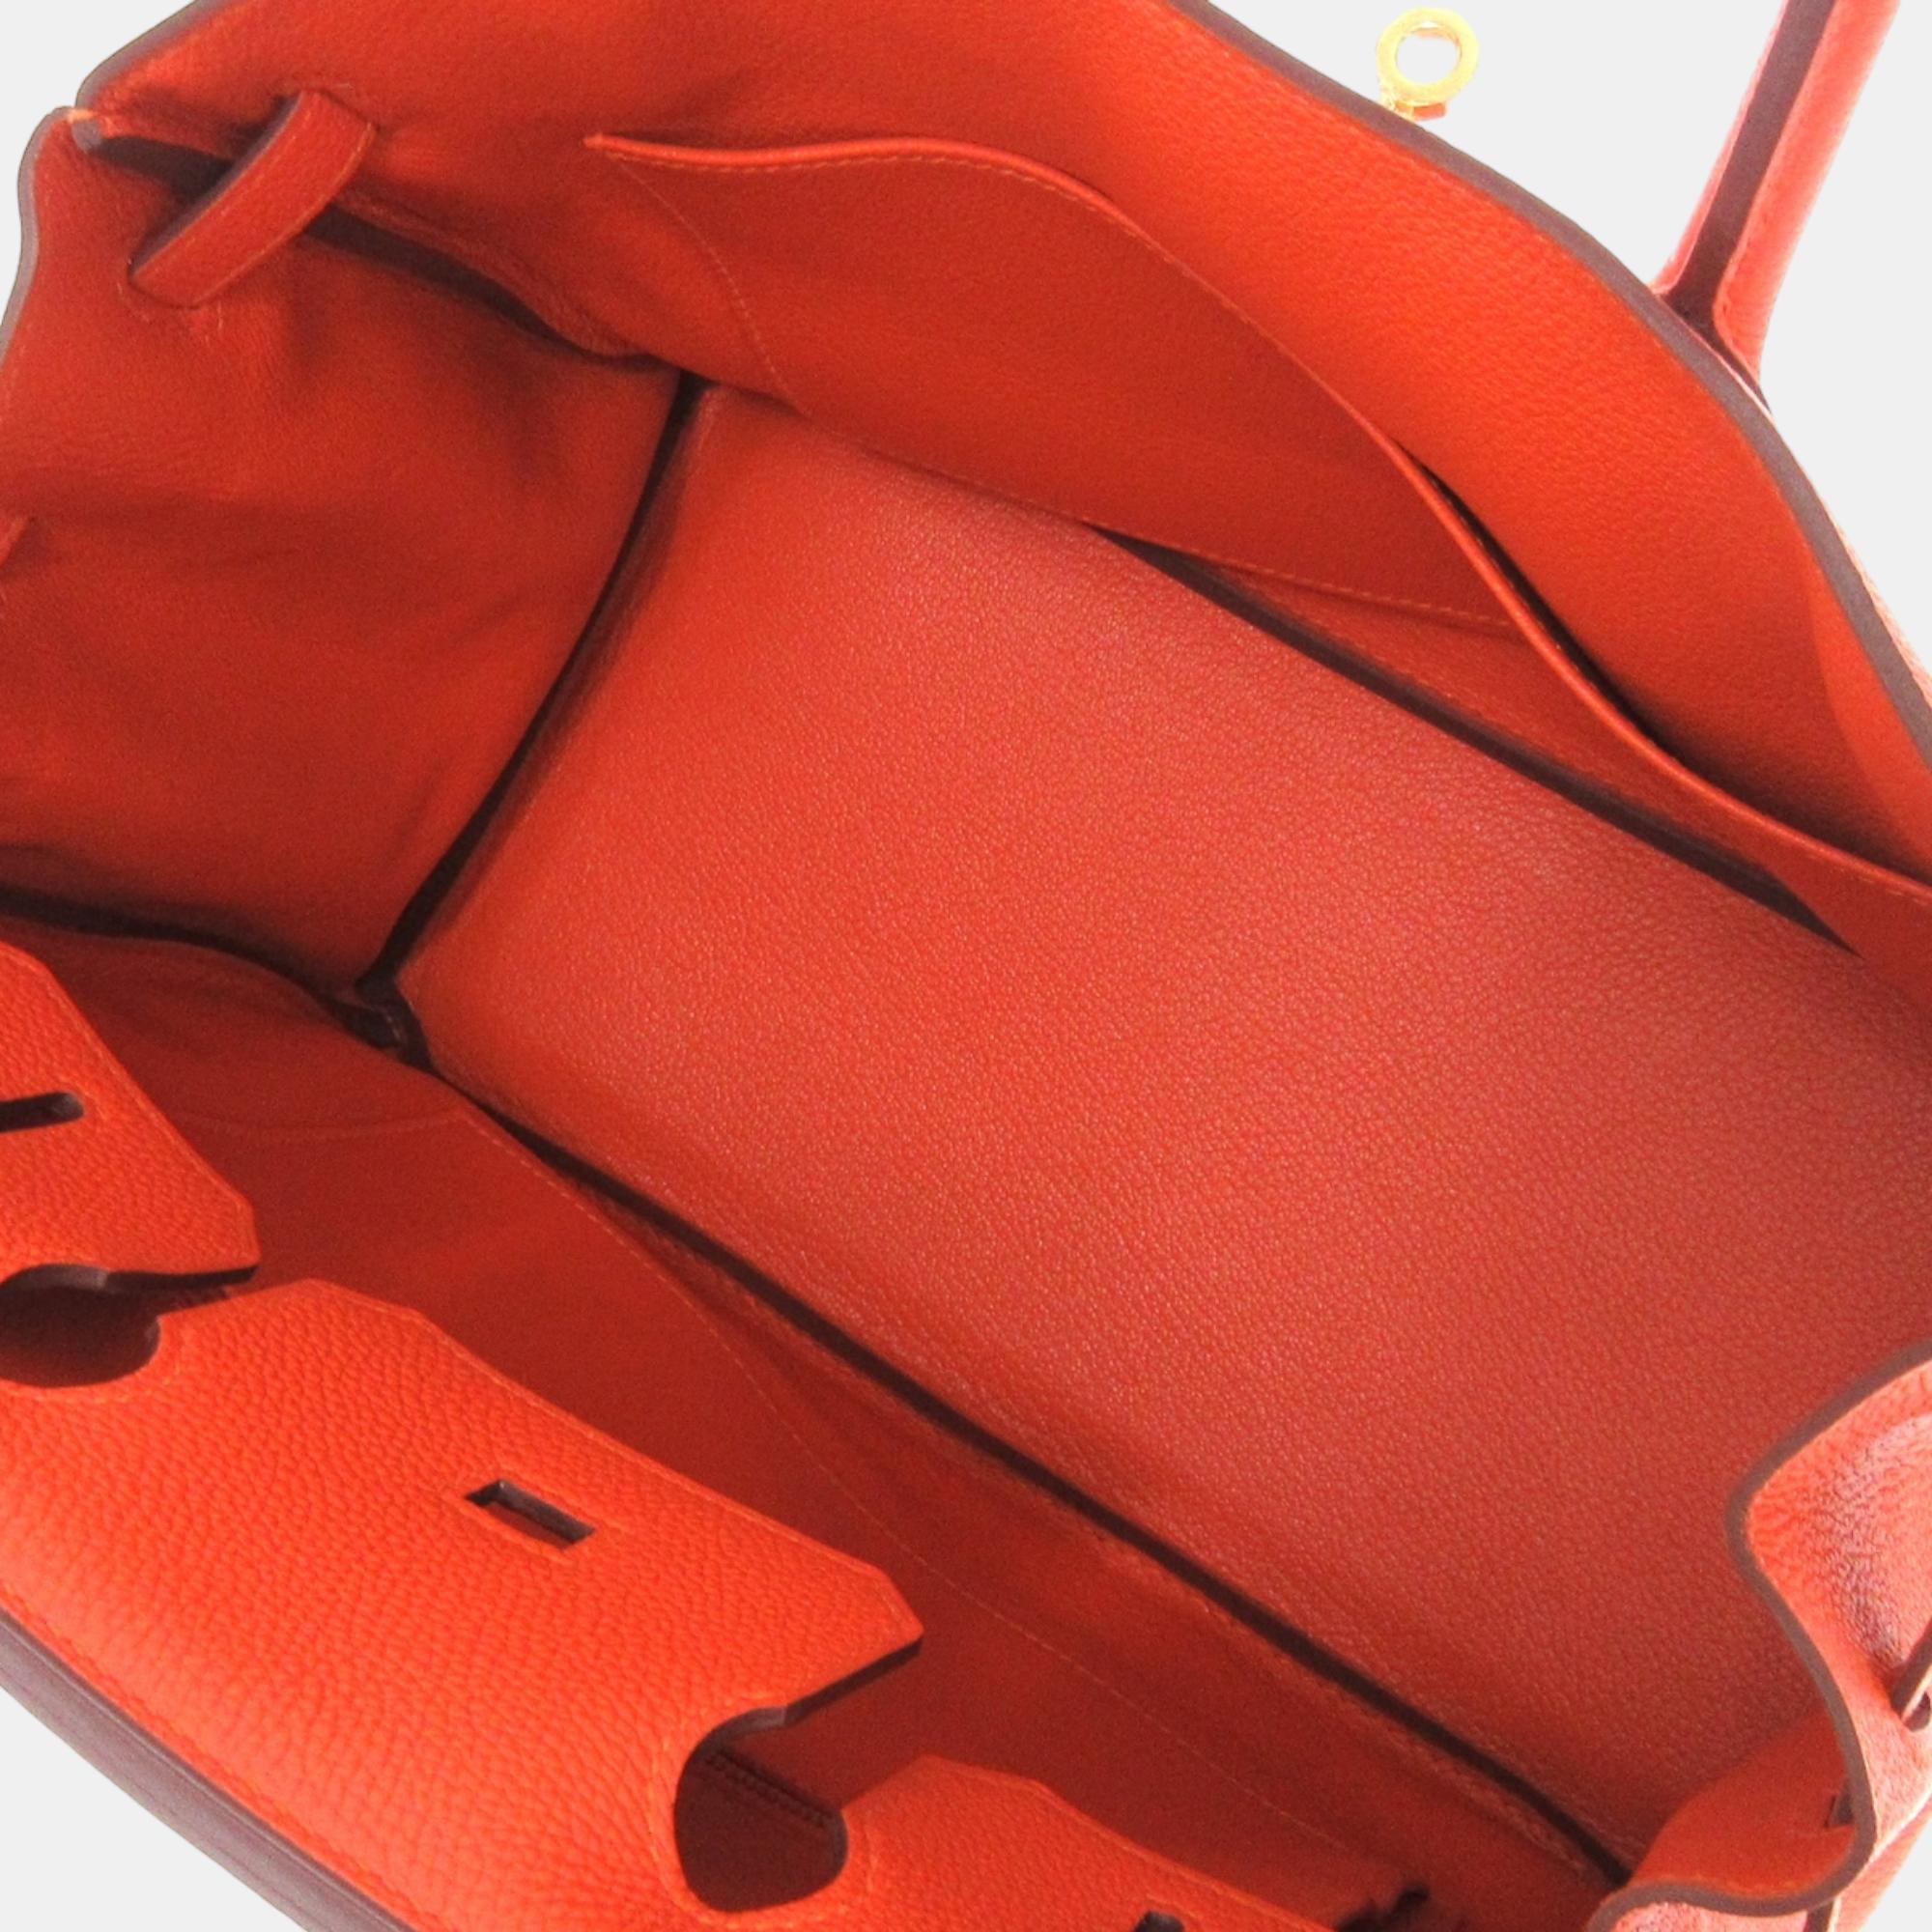 Hermes Orange Togo Leather Gold Hardware Birkin 30 Bag